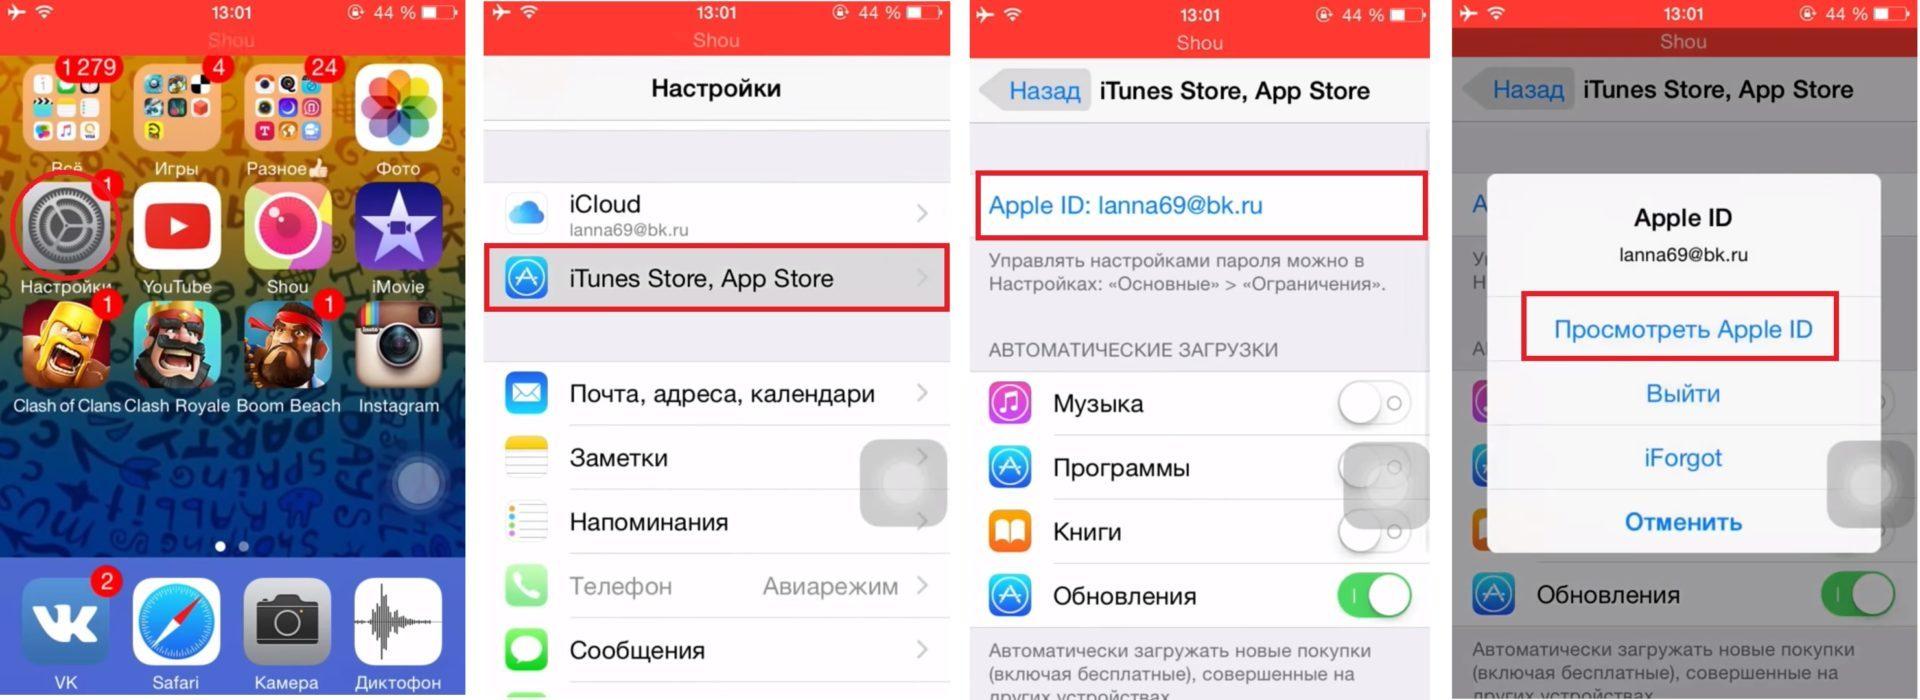 Как поменять язык в телеграмме на русский на андроиде с английского фото 95